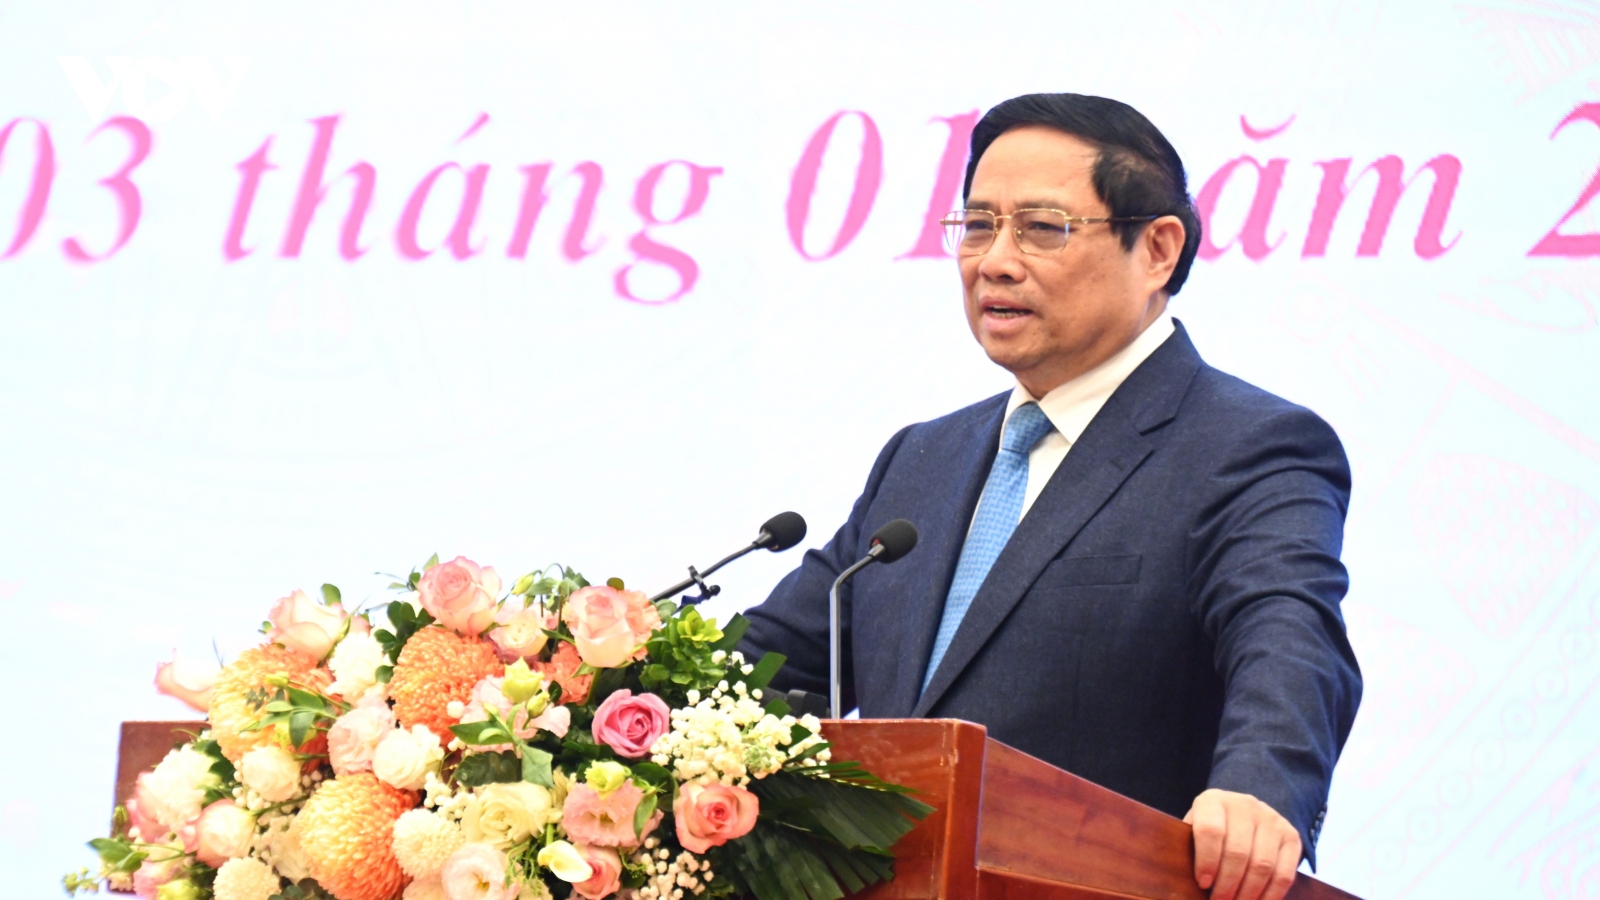 Cần có Chiến lược phát triển công nghiệp văn hóa Việt Nam trong giai đoạn mới